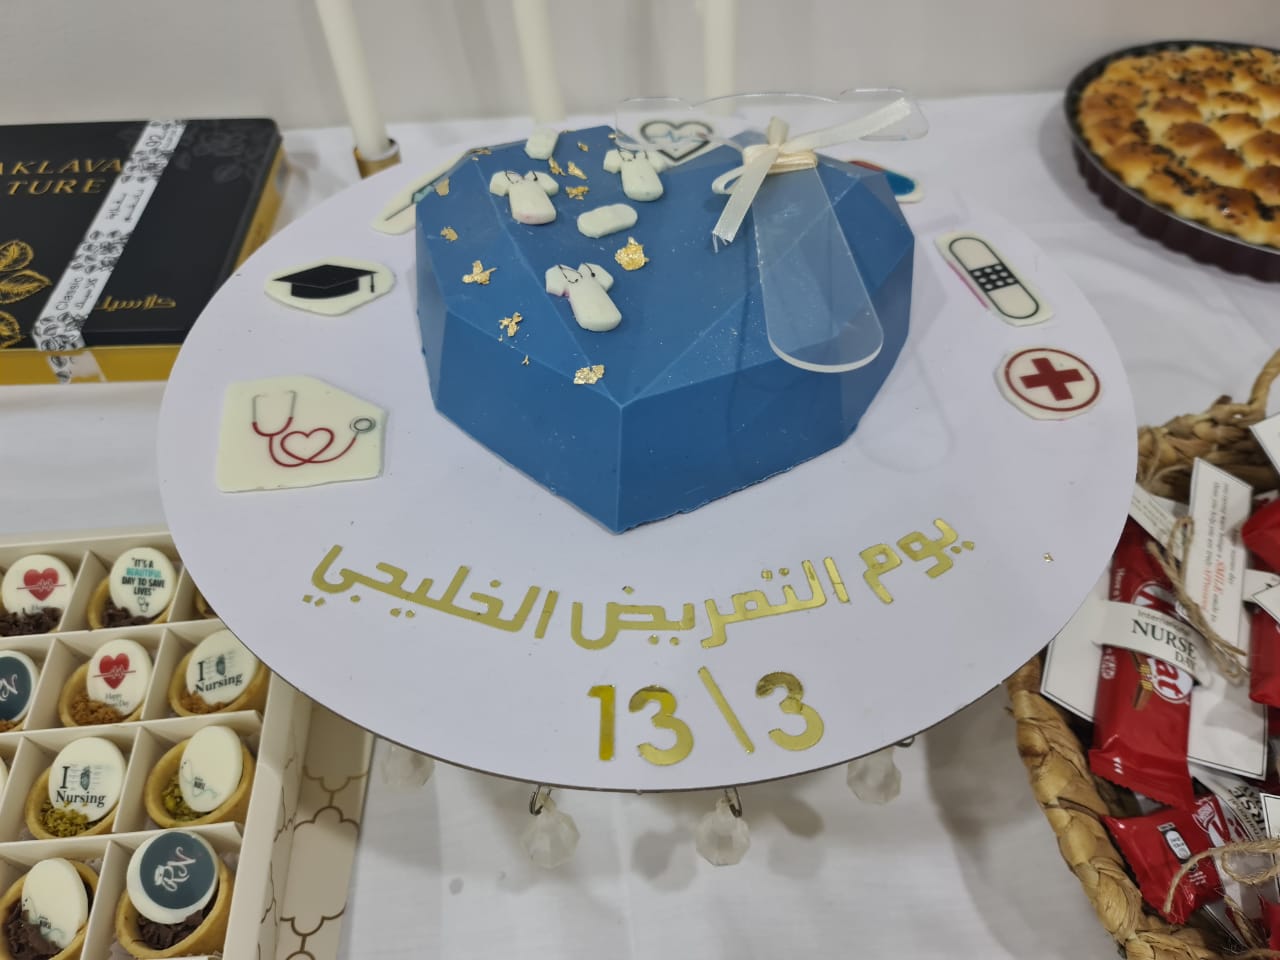 خدمات التمريض بمستشفى بني مالك العام تحتفل باليوم الخليجي للتمريض 2021 م